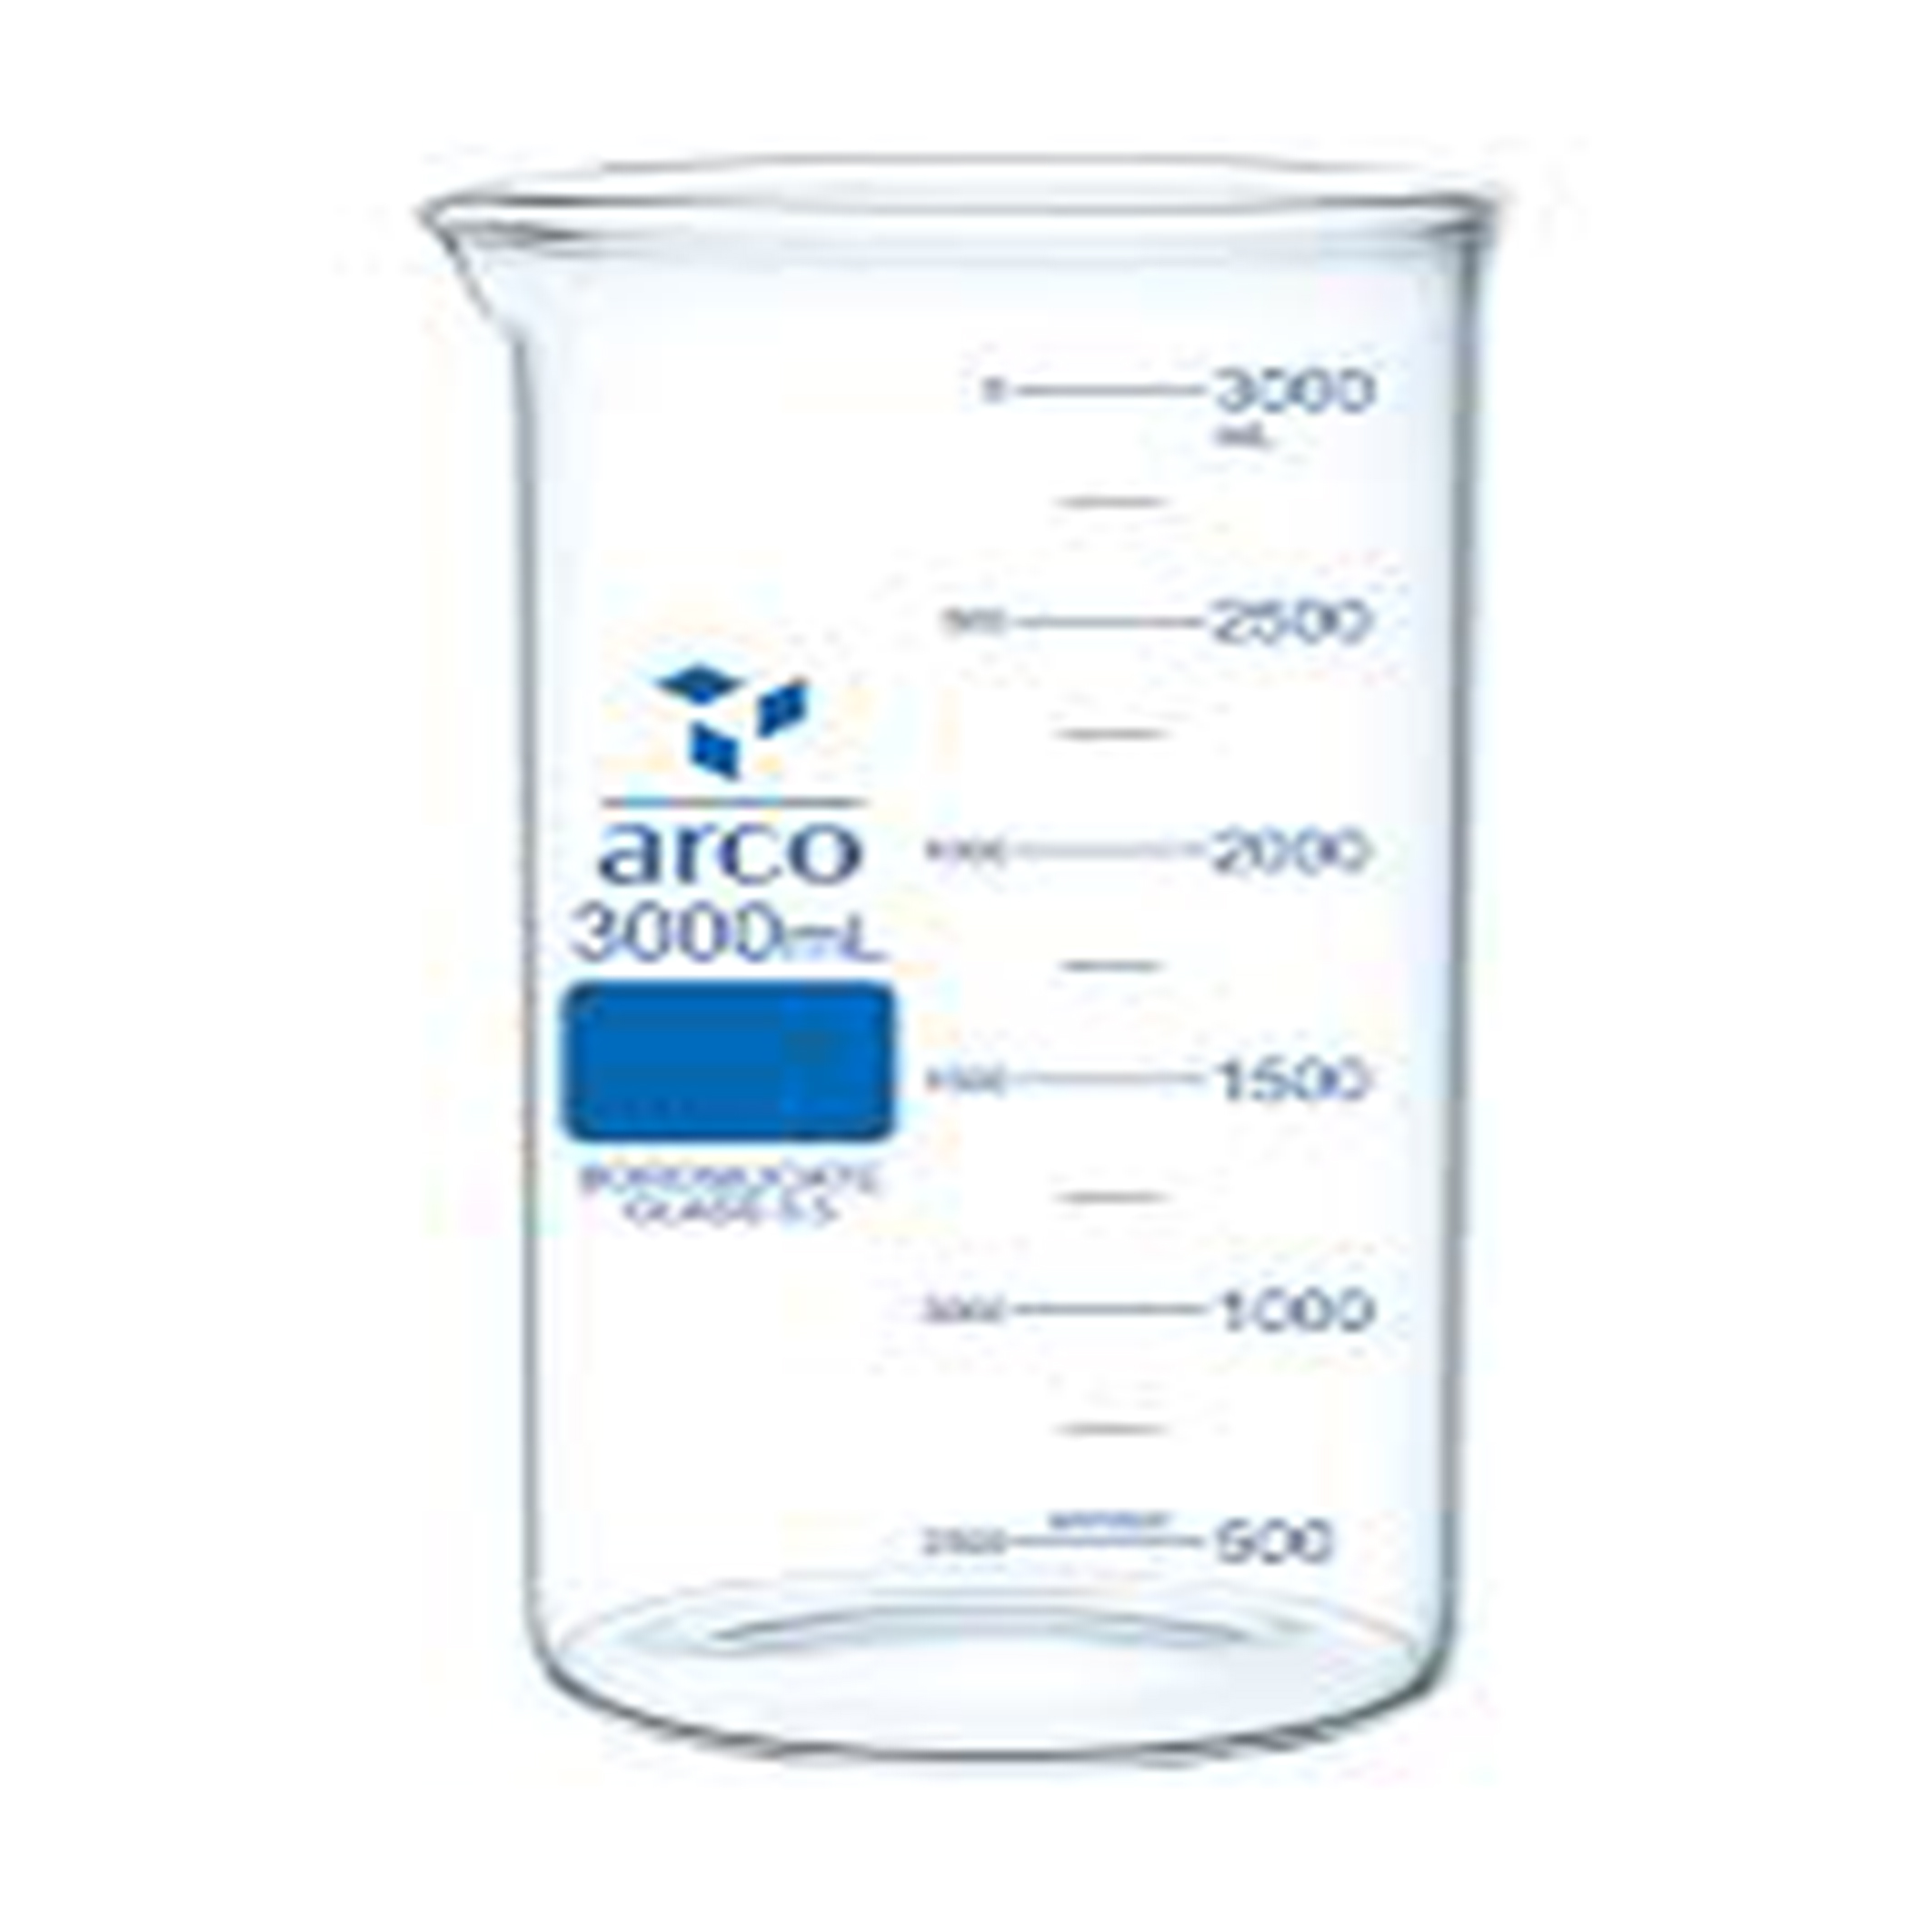 بشر شیشه ای کوتاه 3000 میلی لیتری ARCO